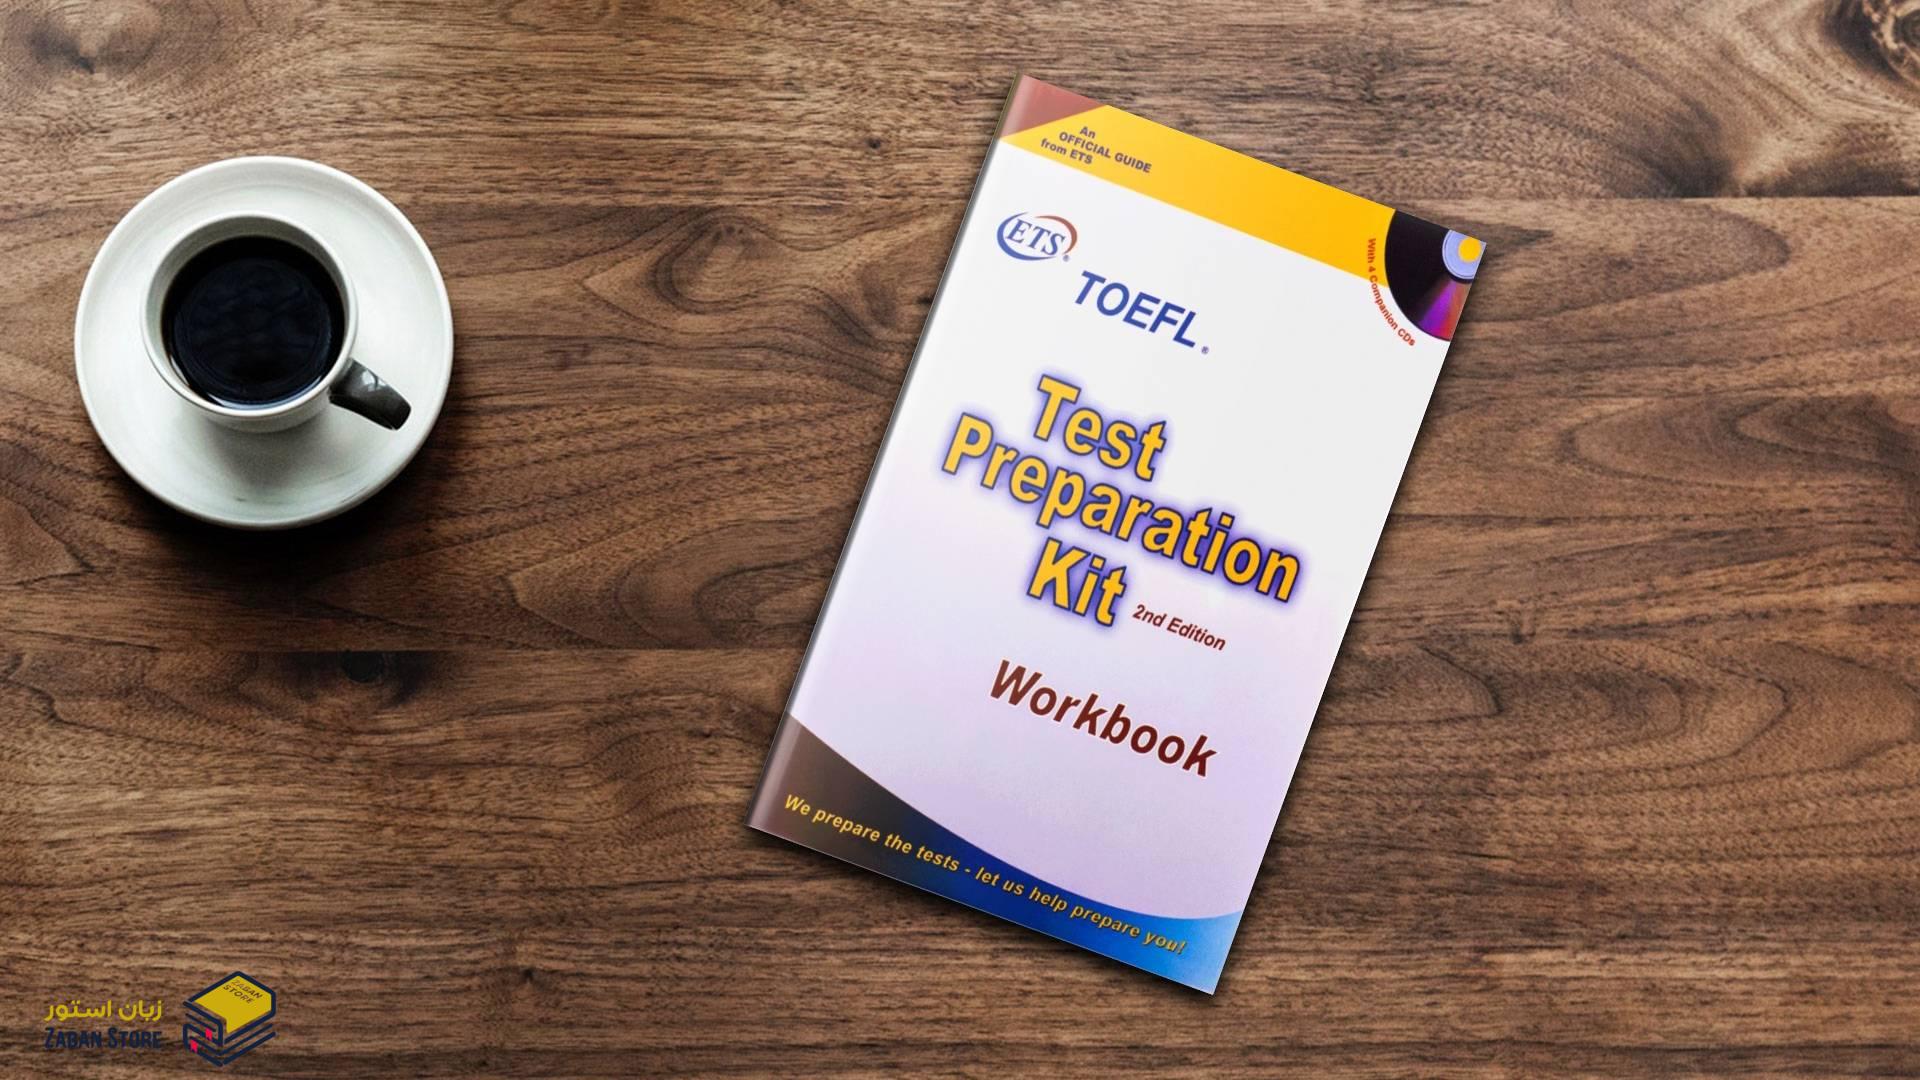 خرید کتاب آزمون تافل | کتاب TOEFL Test Preparation Kit 2nd Edition | کتاب تافل تست پریپریشن کیت ویرایش دوم